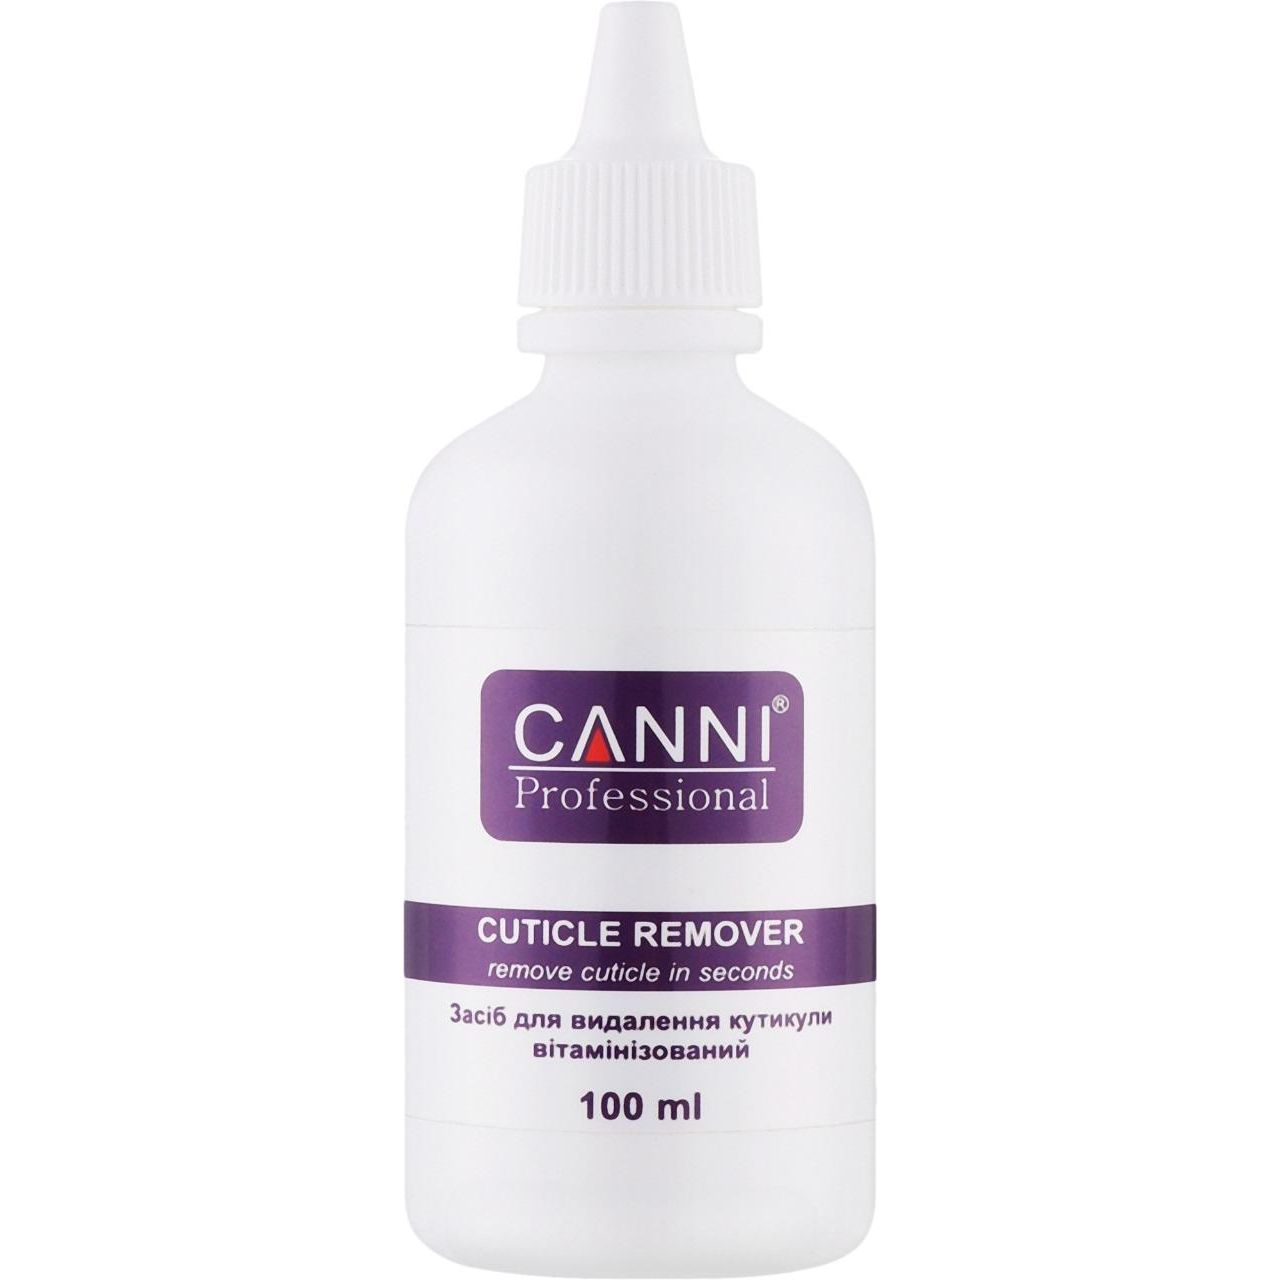 Ремувер для кутикули Canni вітамінізований 100 мл - фото 1